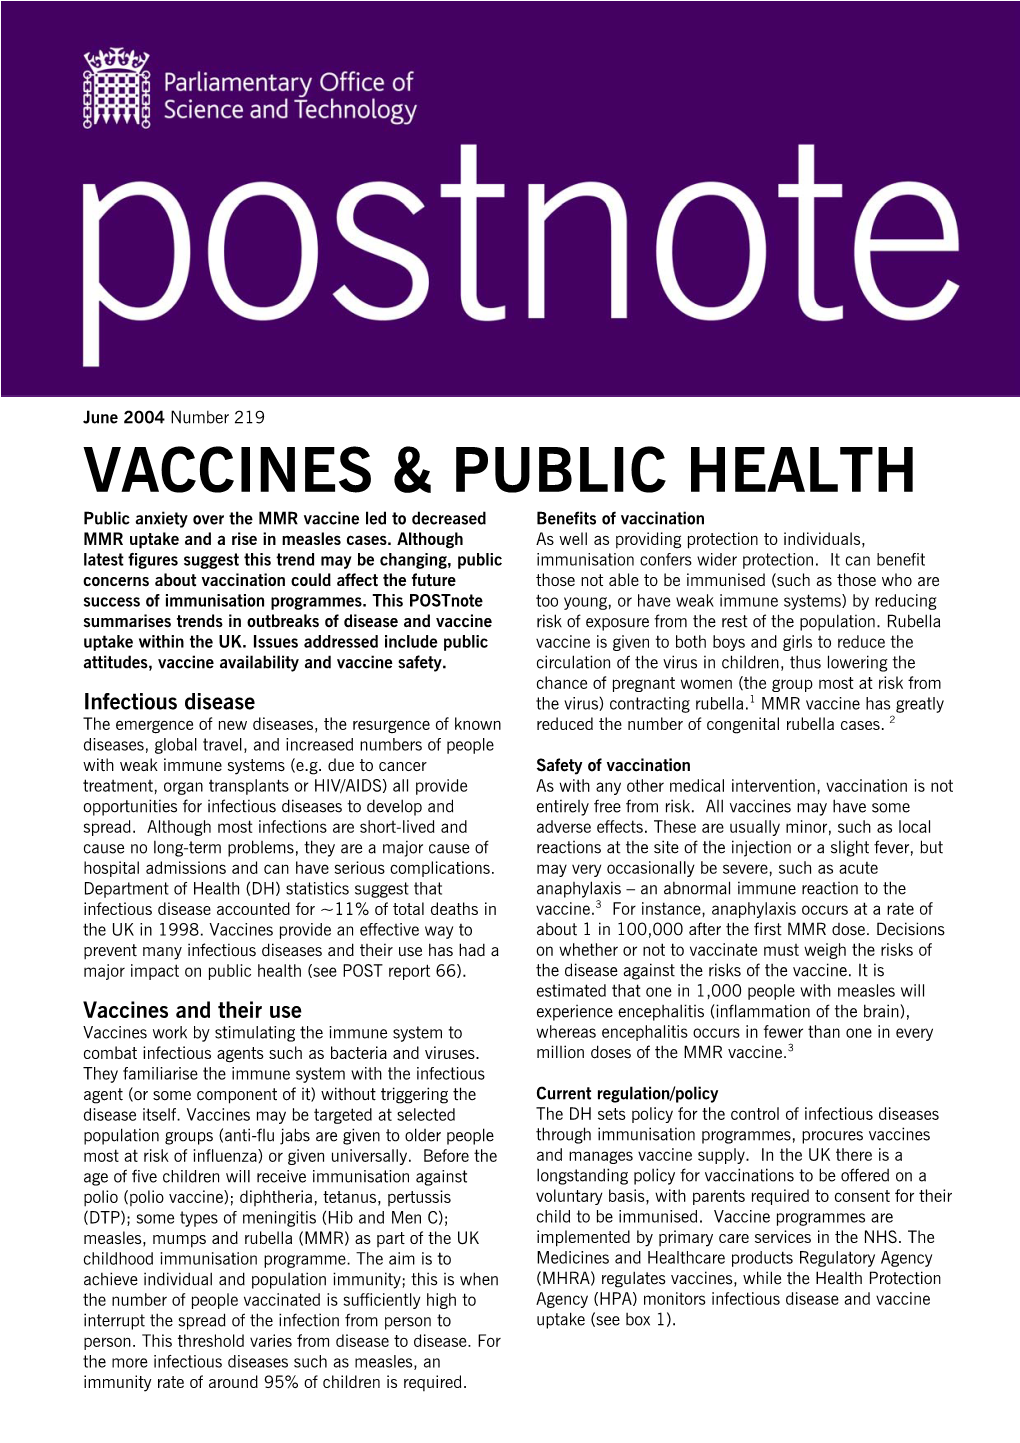 Vaccines & Public Health